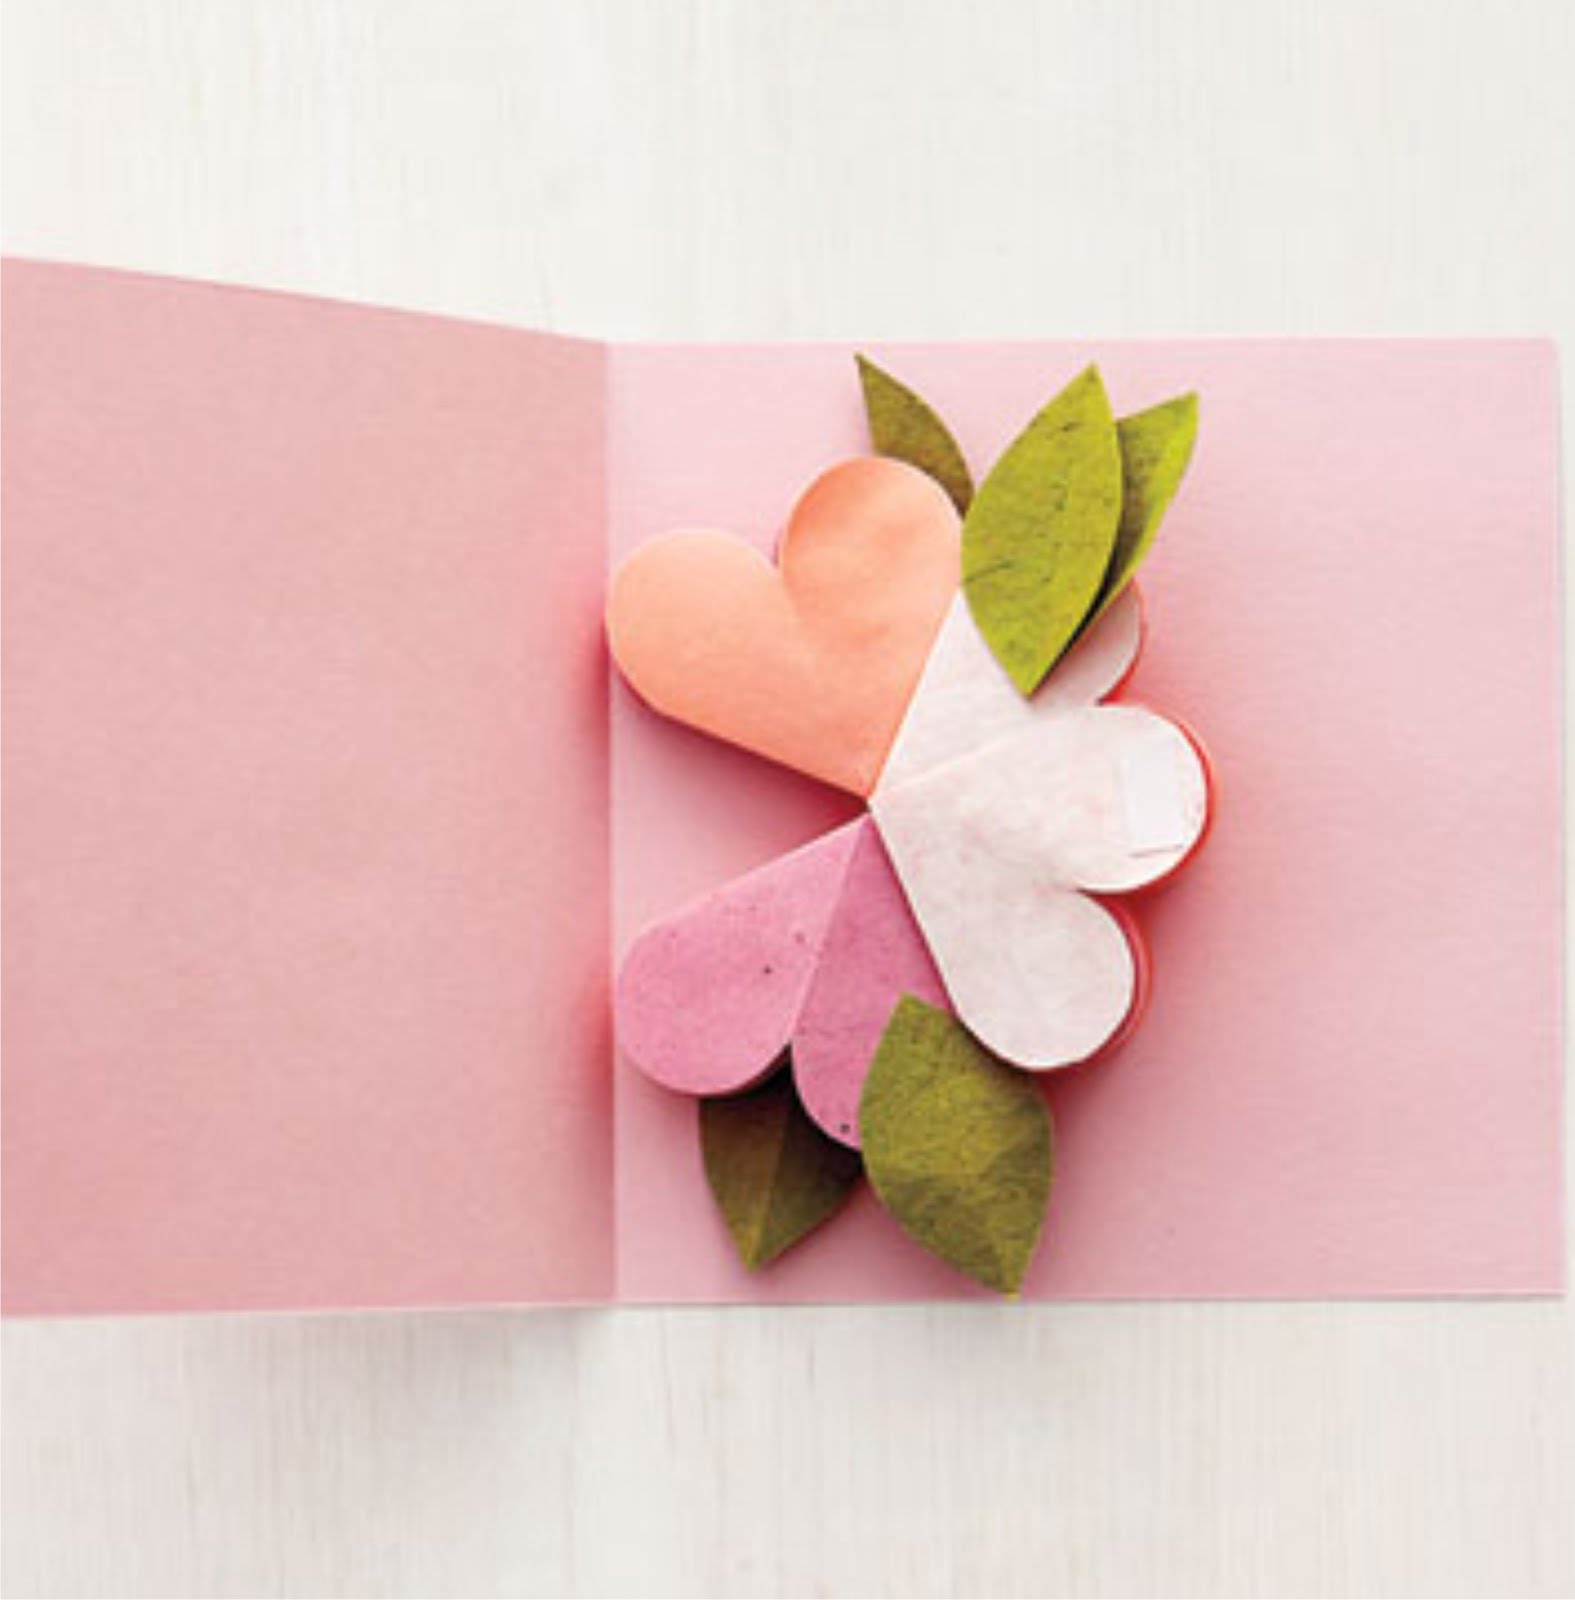 Цветы из бумаги для открытки своими руками: Объемная открытка с цветами внутри – Открытки своими руками